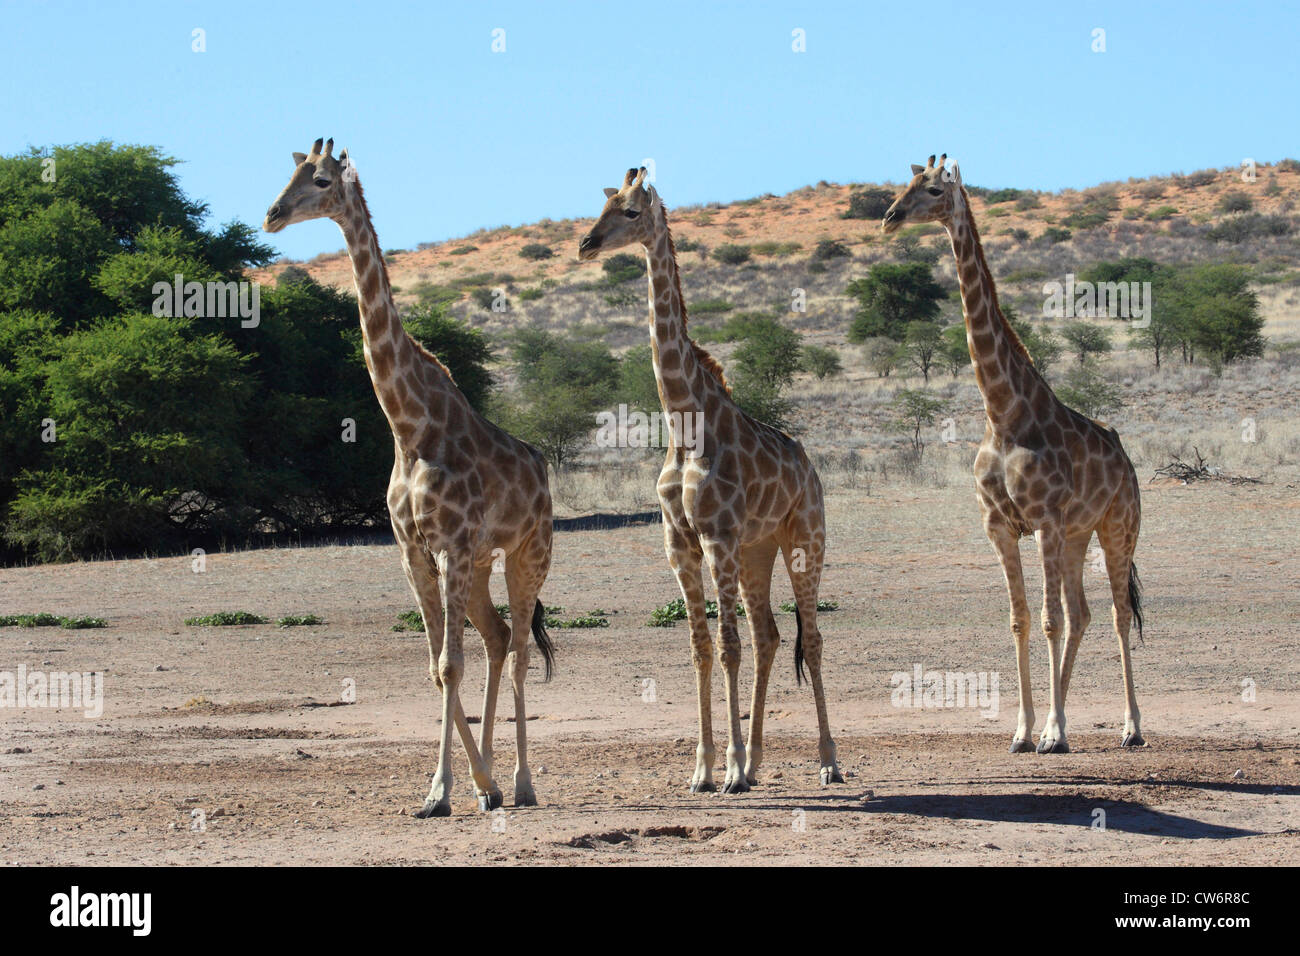 Girafe (Giraffa camelopardalis), trois animaux, marchant à travers la steppe côte à côte, Afrique du Sud, le parc transfrontalier Kgalagadi NP Banque D'Images